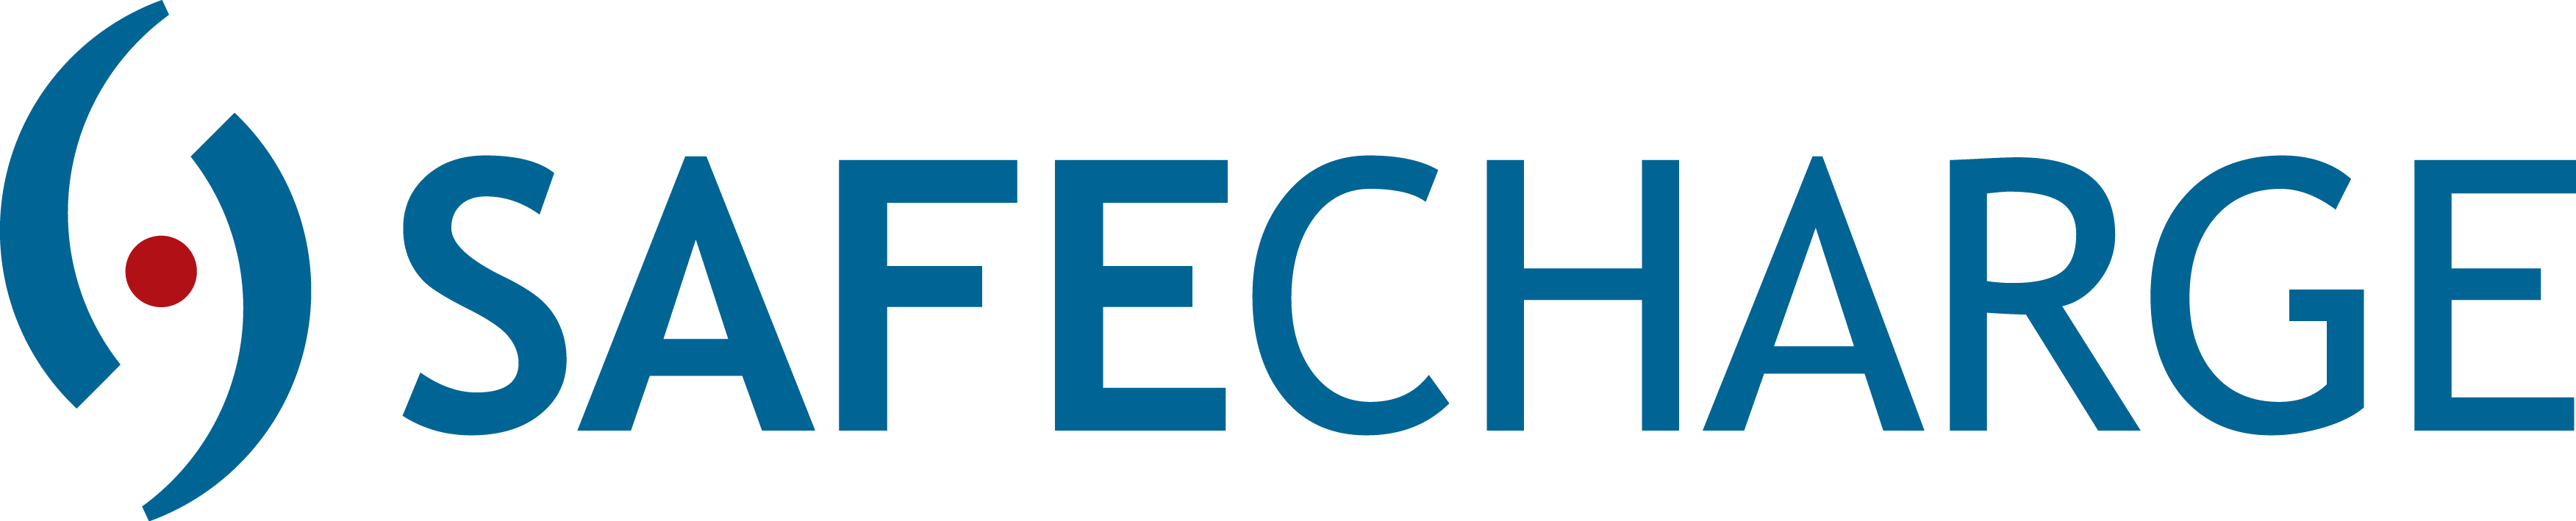 Safecharge logo